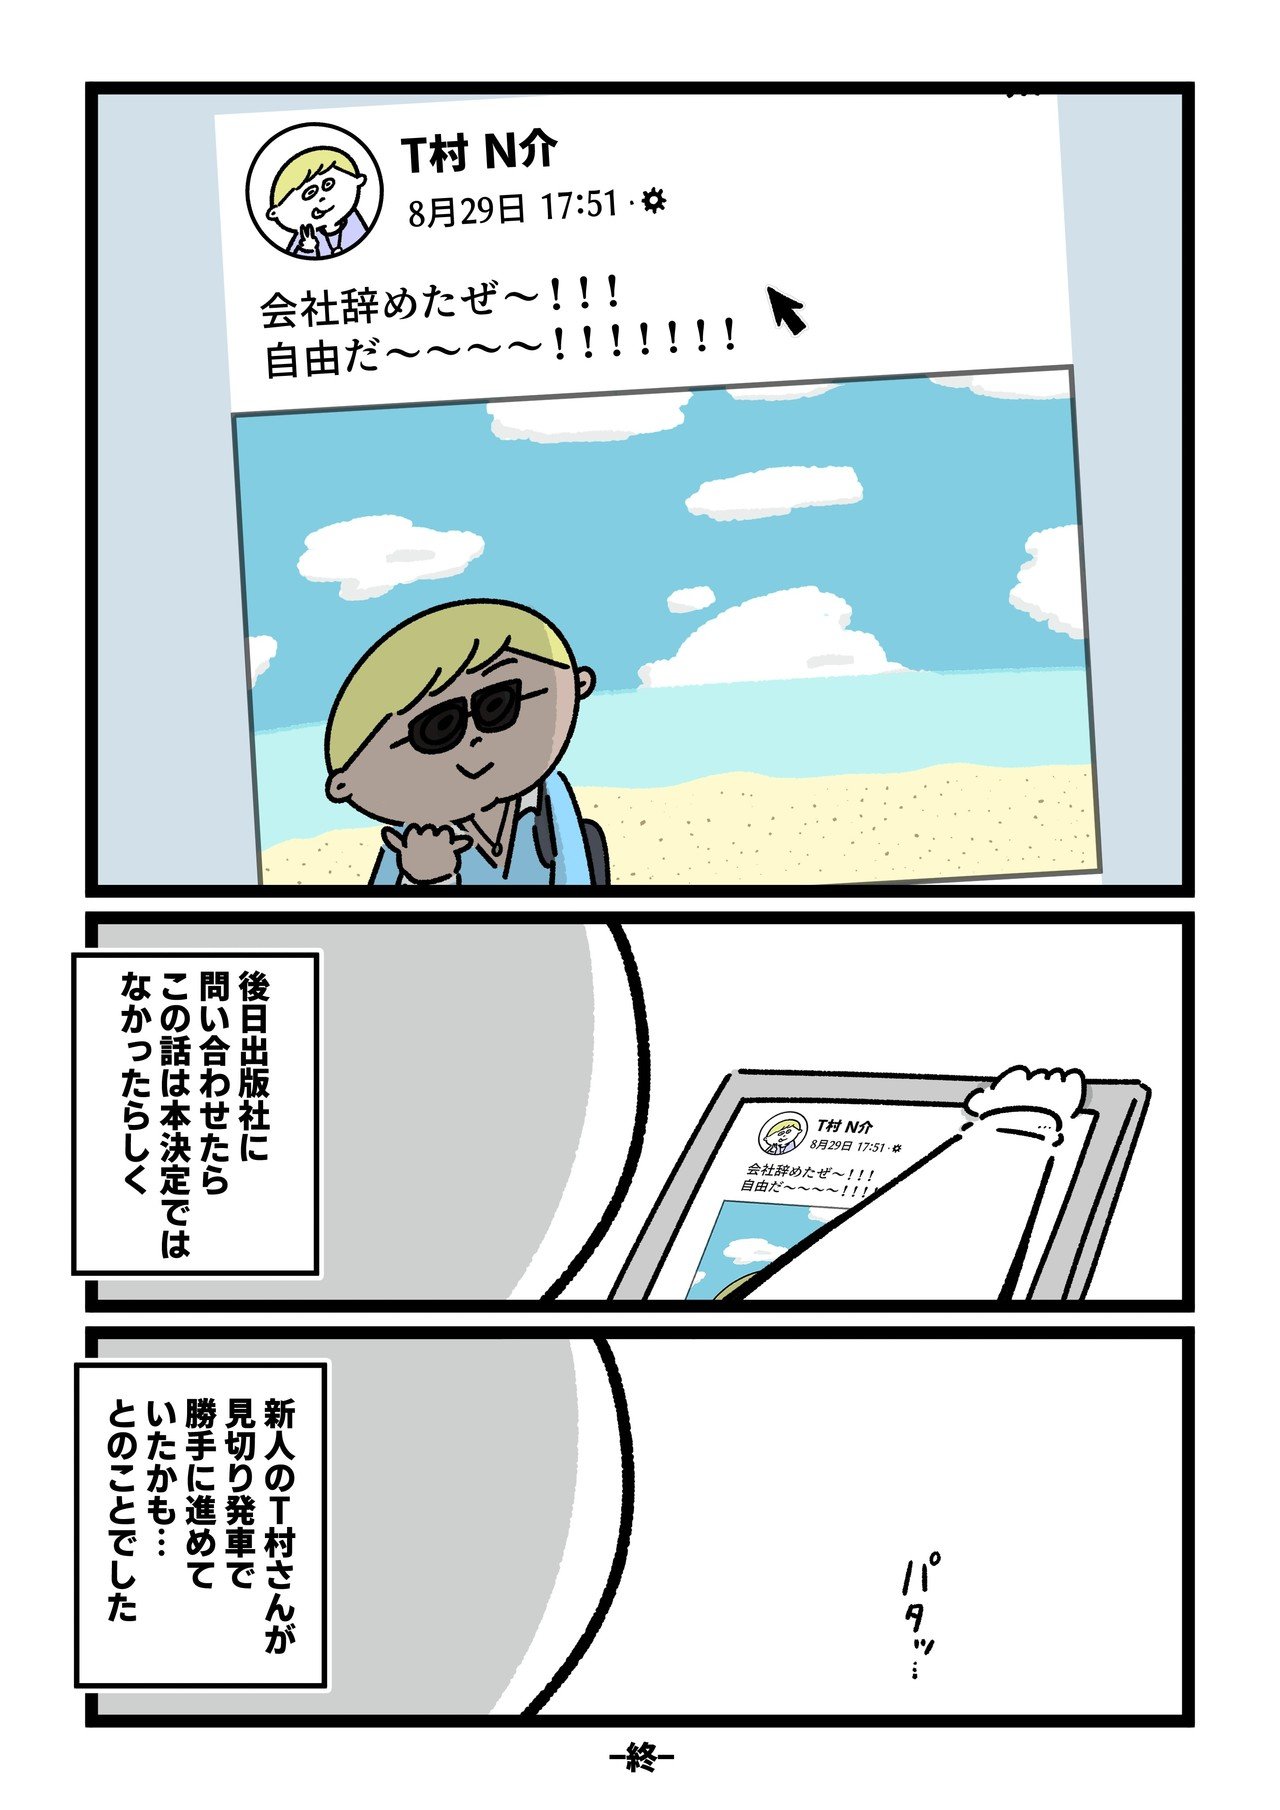 コミック28_出力_004